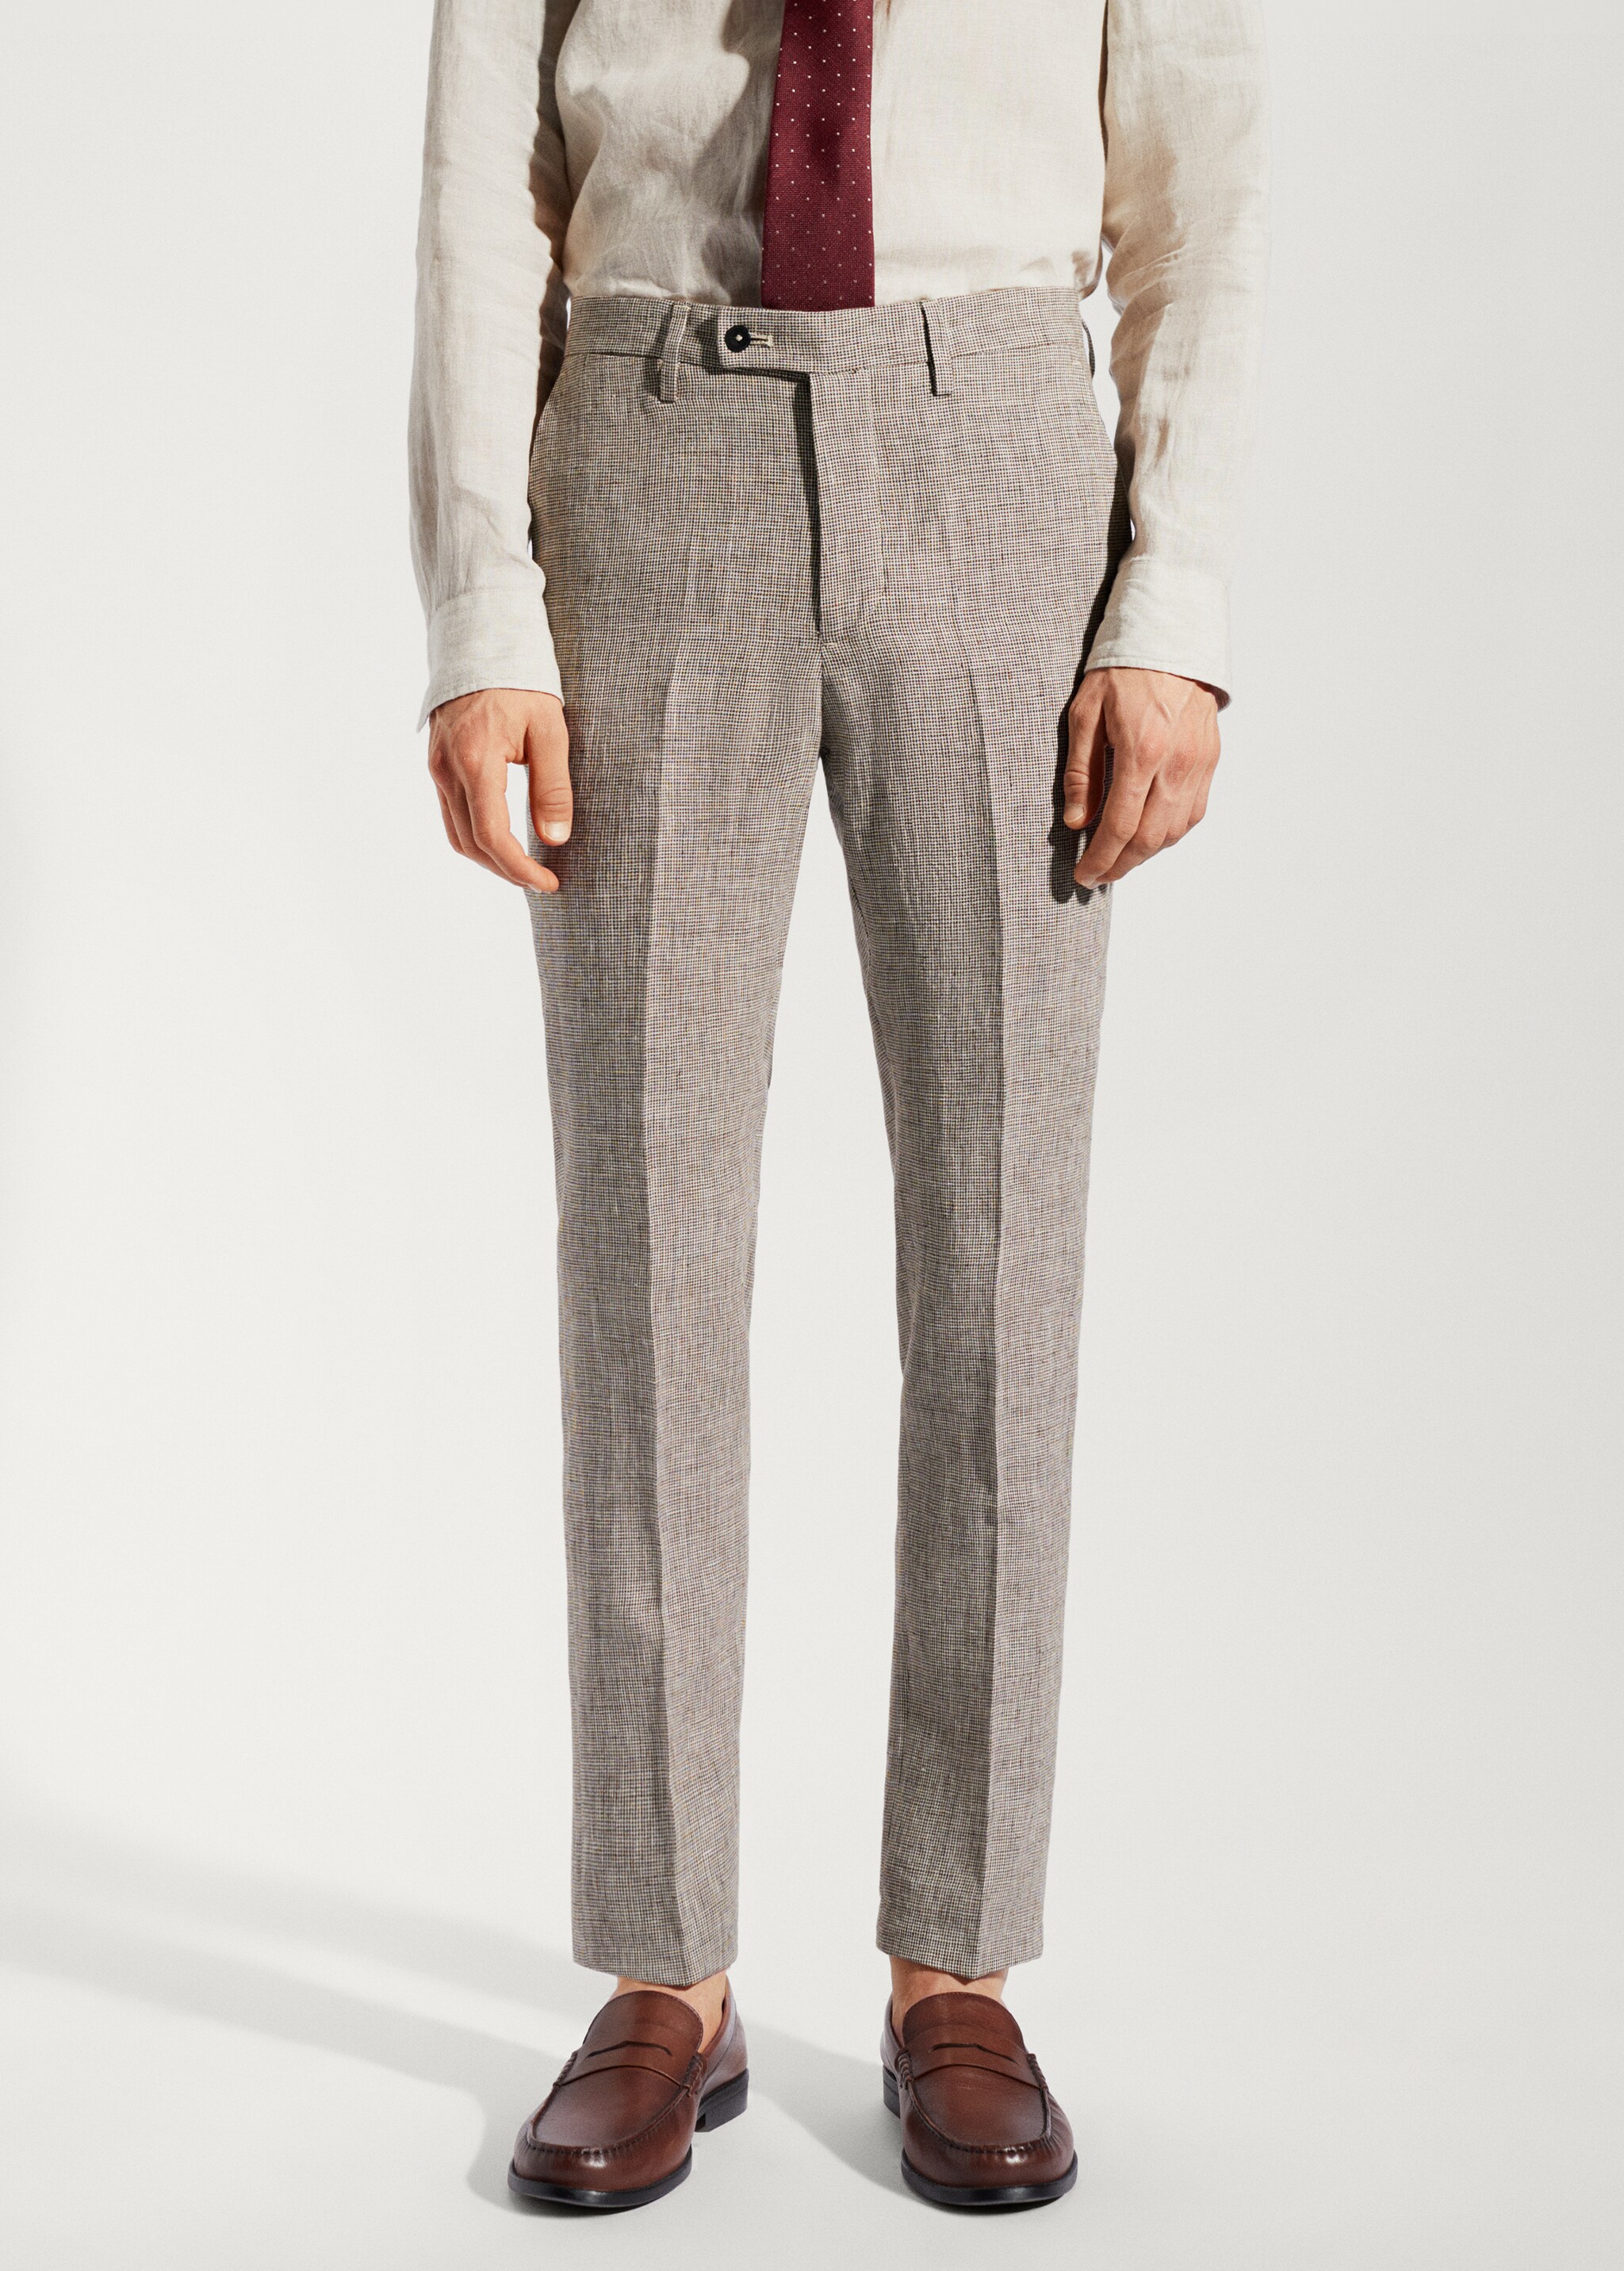 Pantalón traje 100% lino - Plano medio